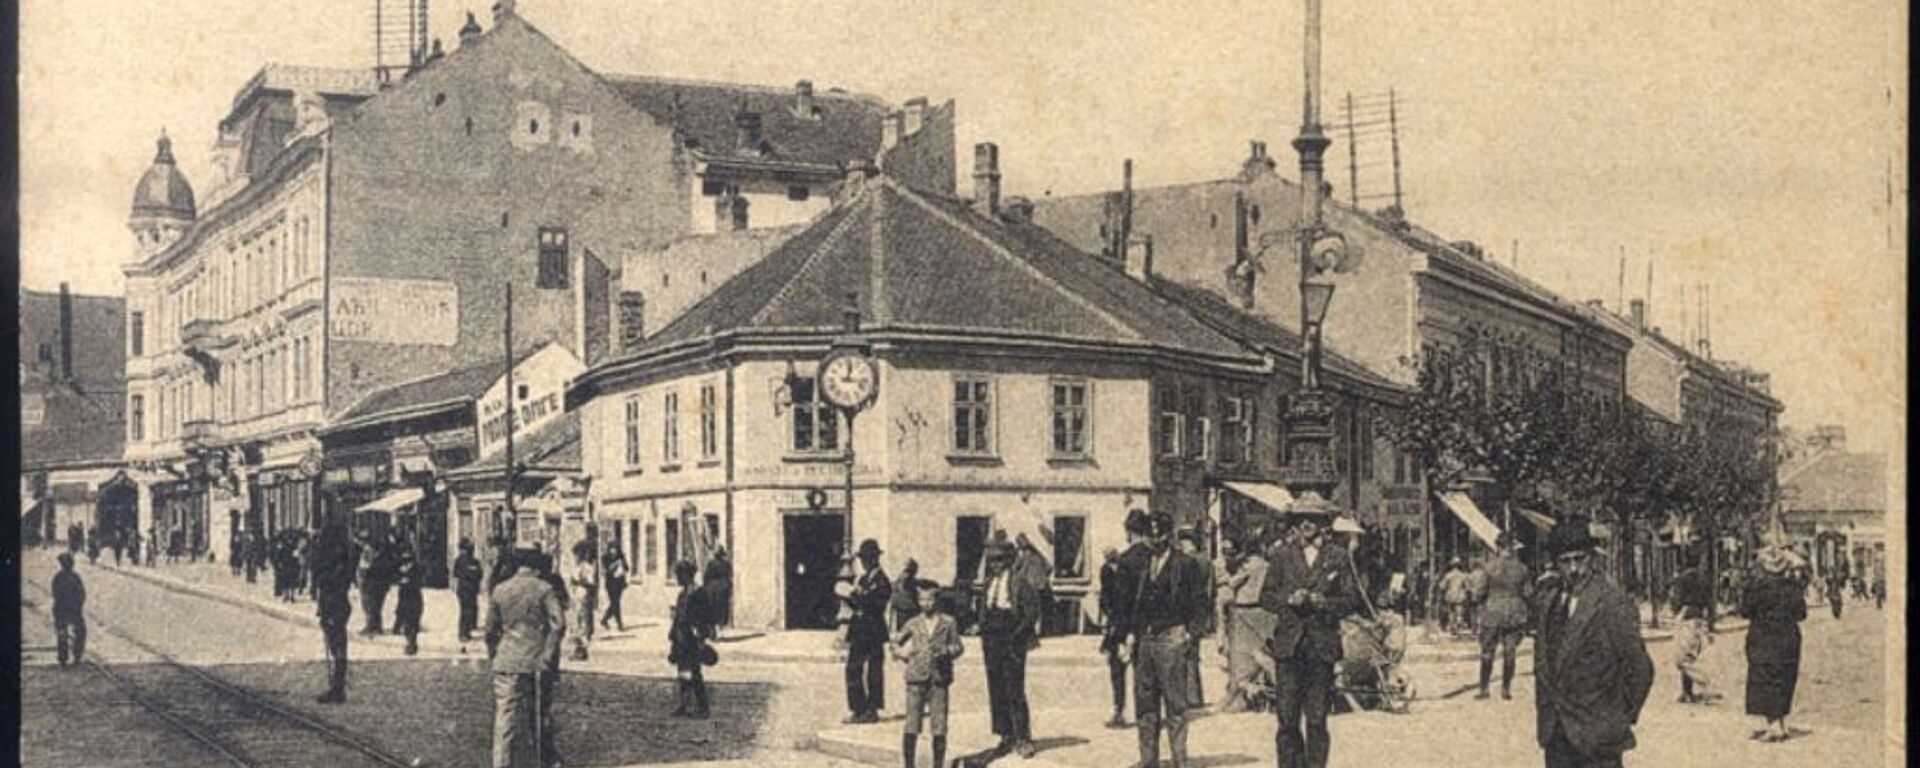 Kafana Albanija u predratnom Beogradu - Sputnik Srbija, 1920, 10.11.2020